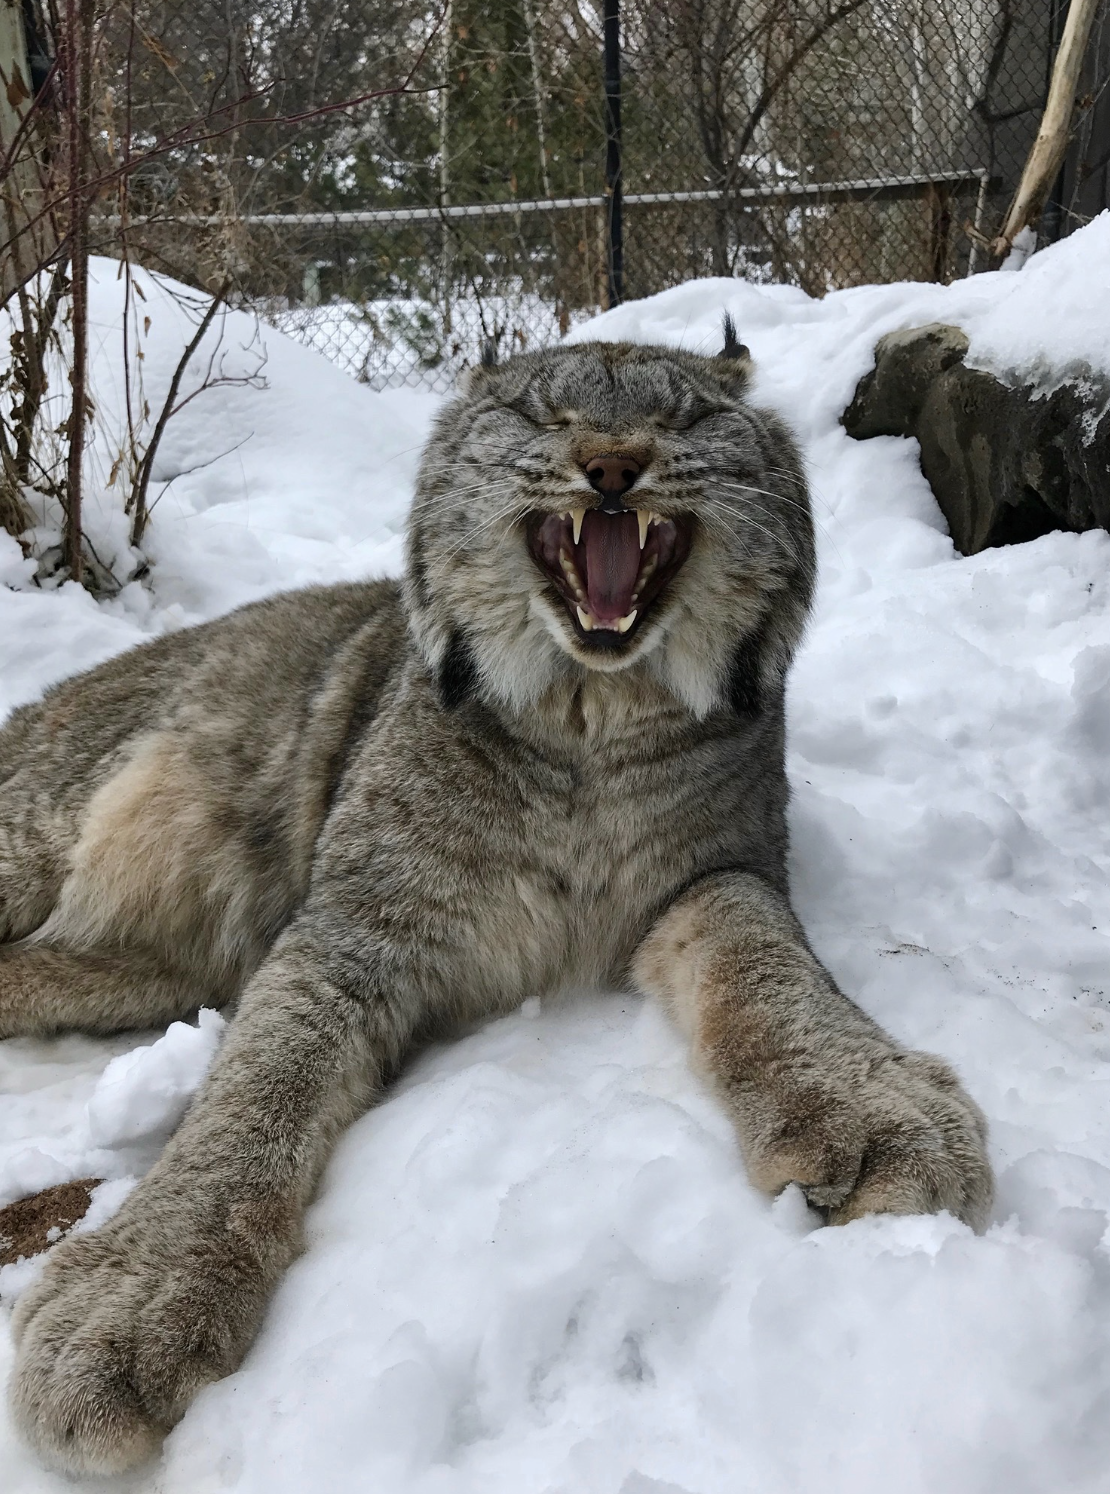 Fierca the Canada Lynx